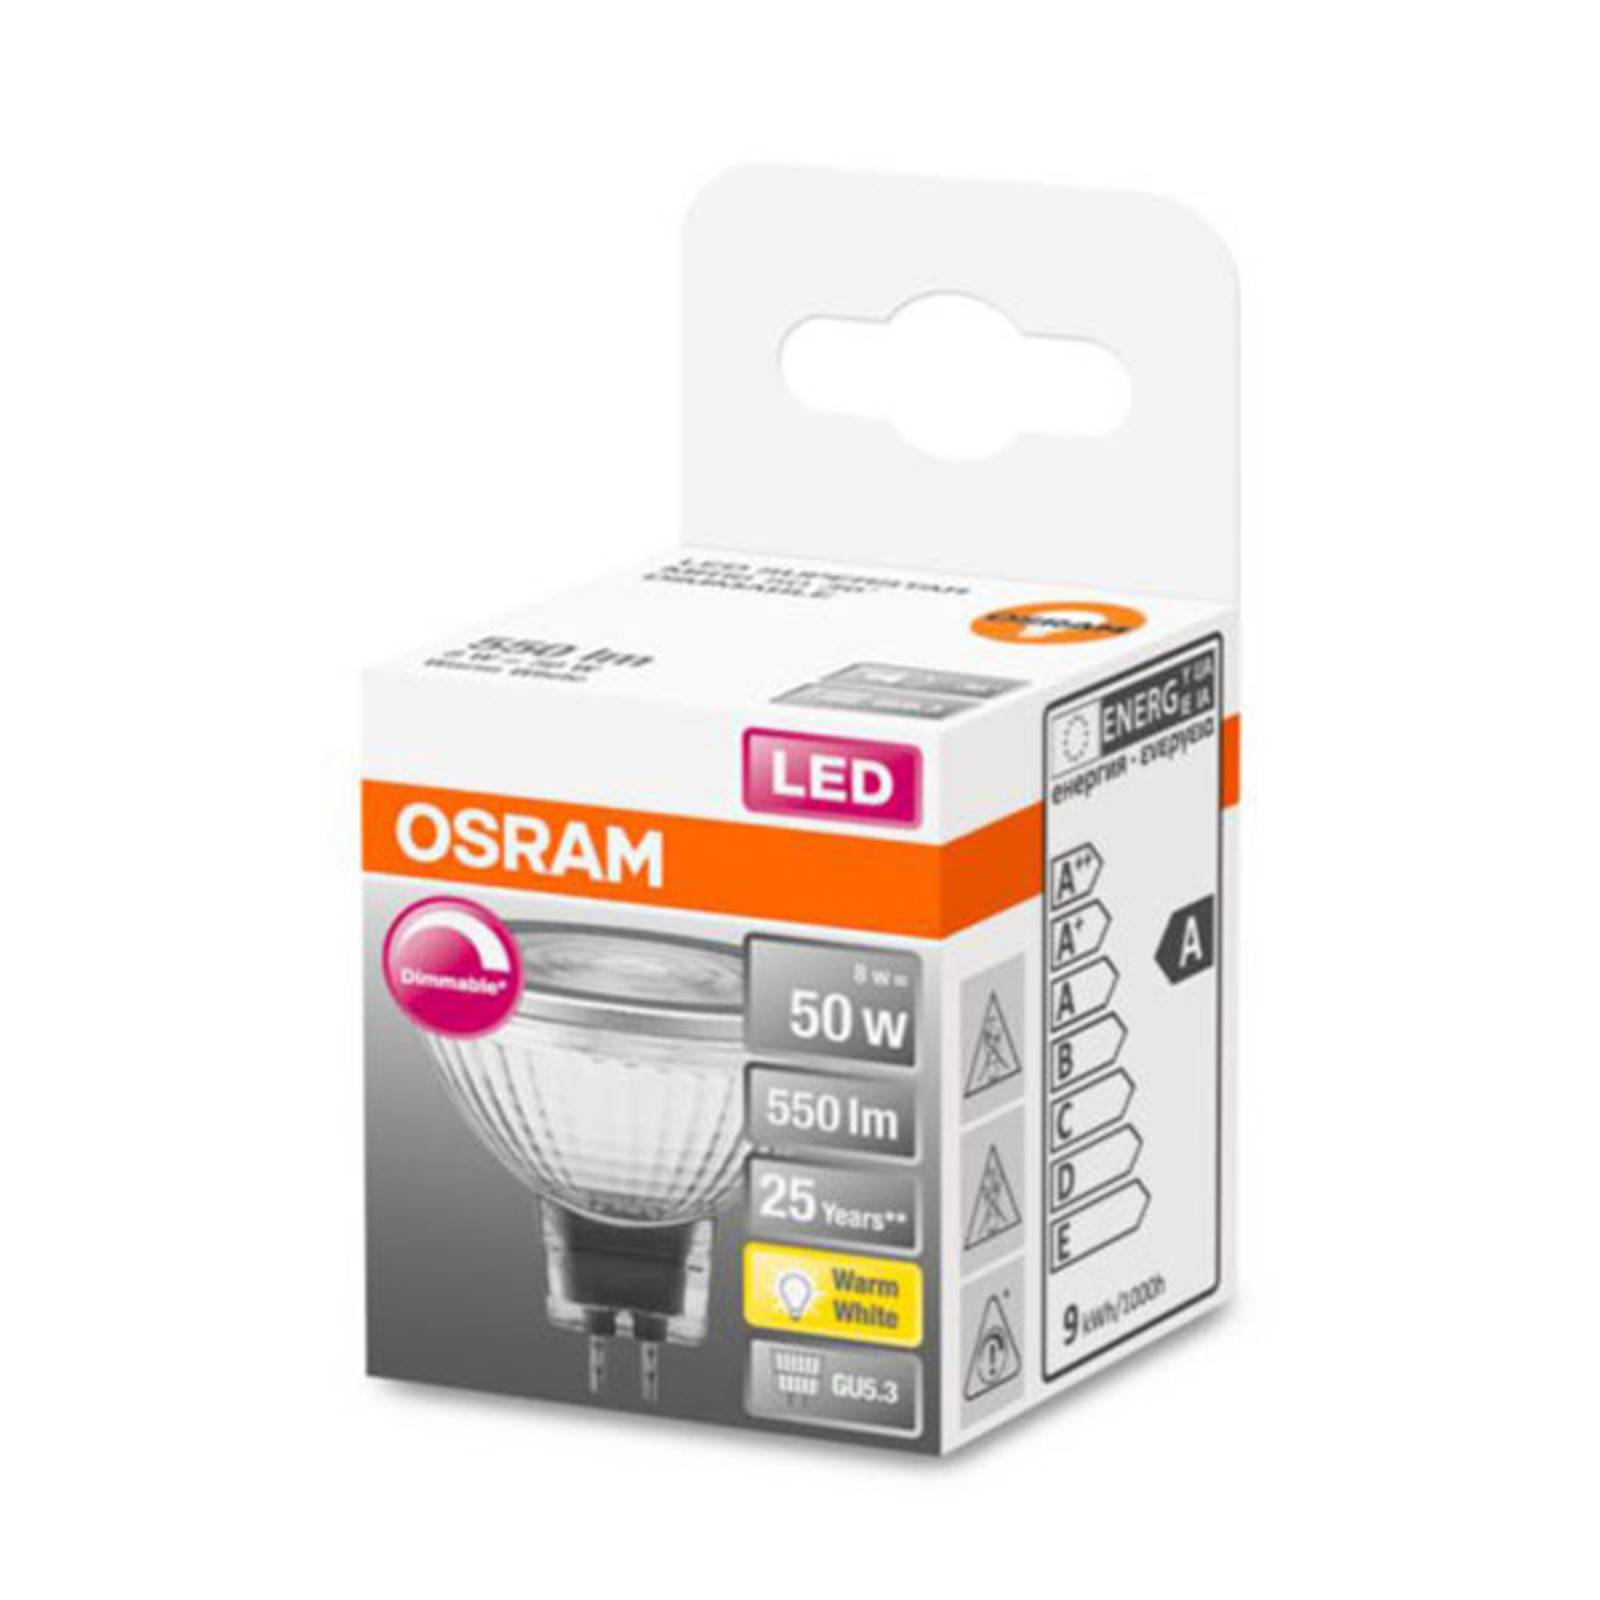 OSRAM OSRAM LED reflektor GU5.3 6,8W 927 36° stmívatelný